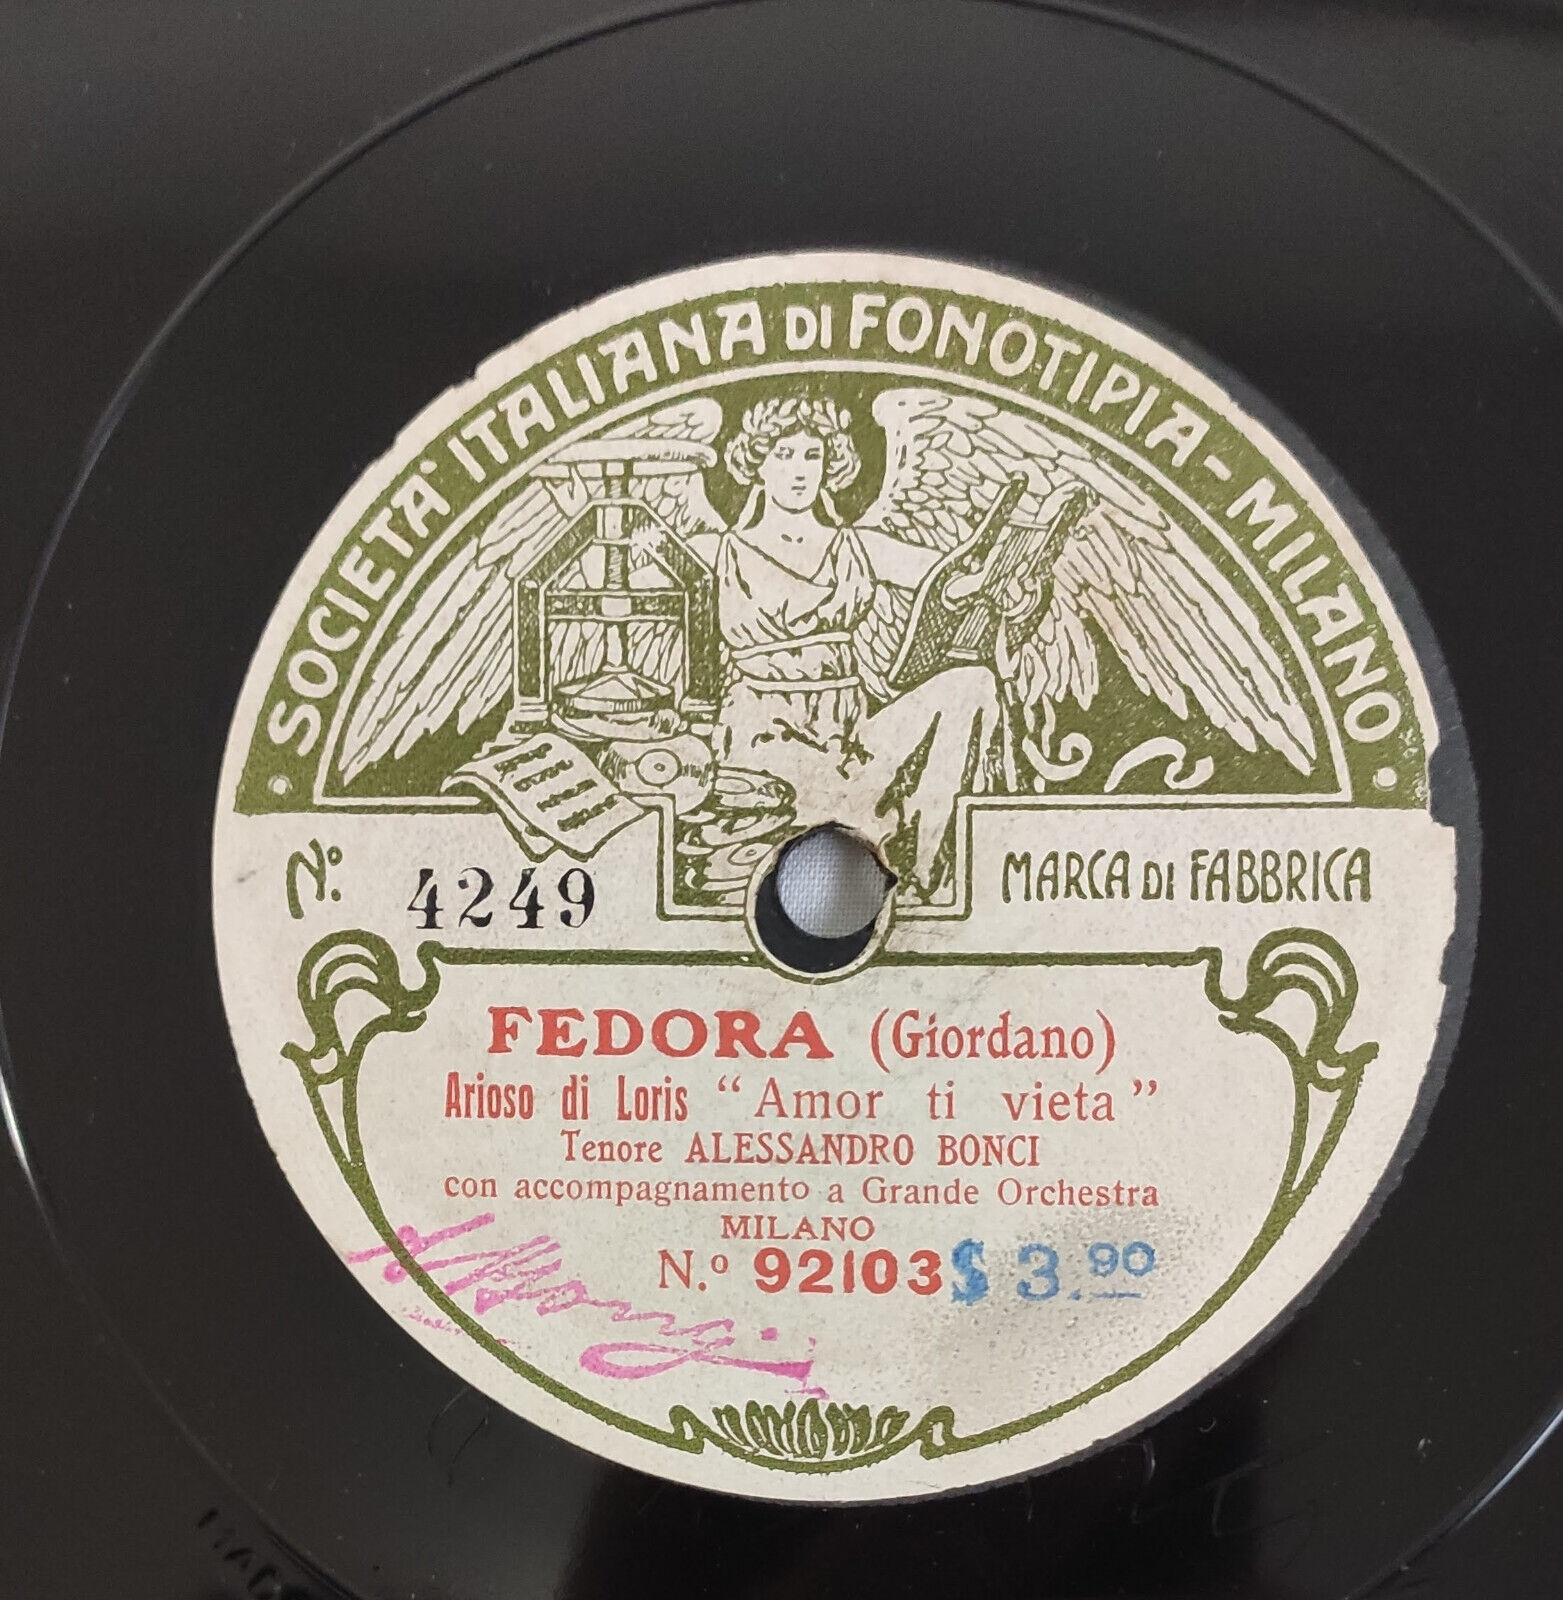 Fonotipia Shellac Record Fedora & Andrea Chenier Tenore A. Bonci   78 Rpm